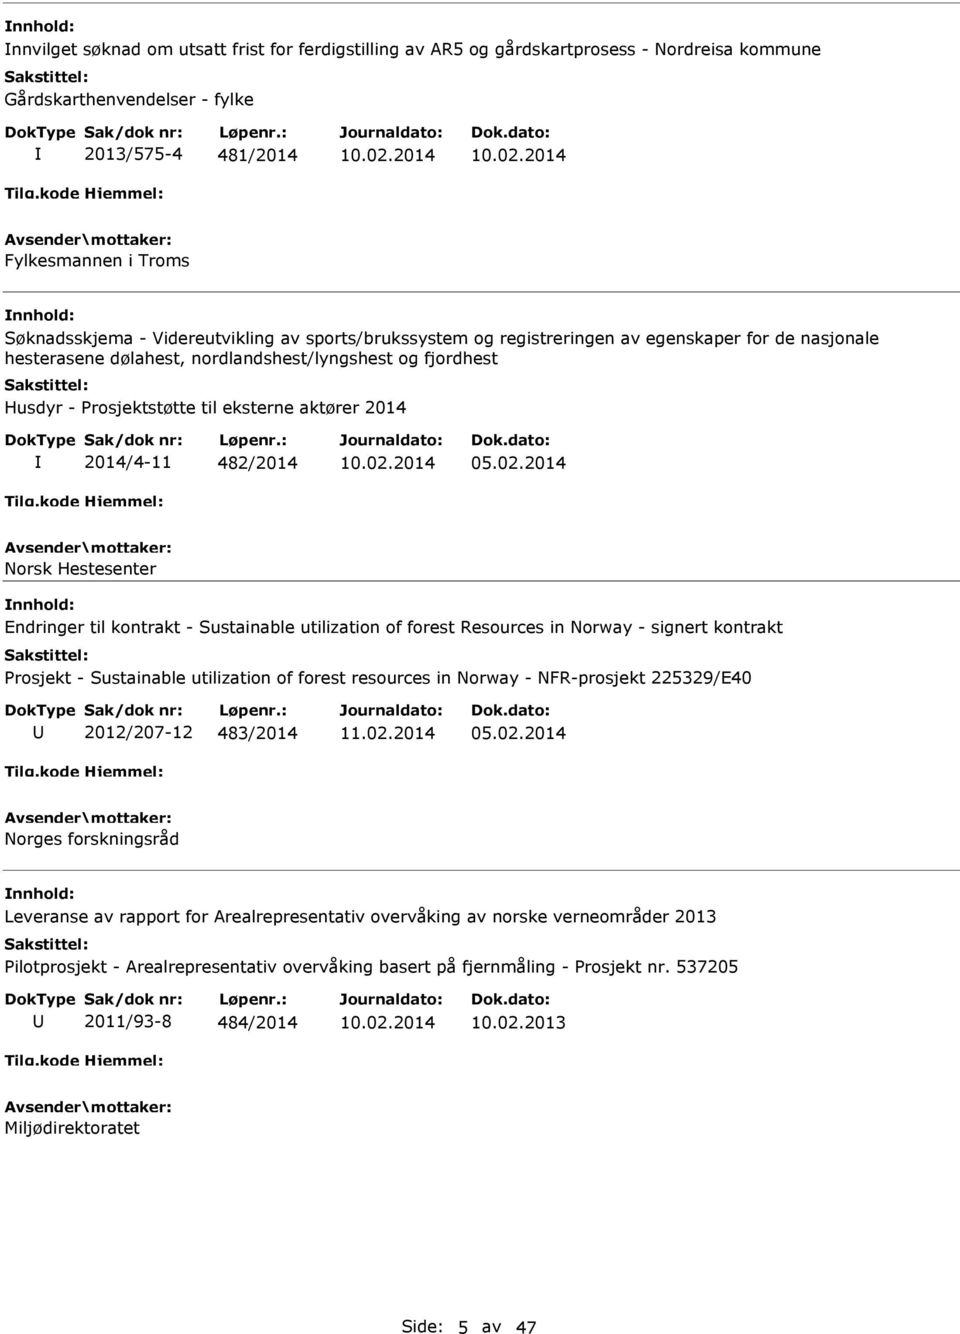 2014 Fylkesmannen i Troms Søknadsskjema - Videreutvikling av sports/brukssystem og registreringen av egenskaper for de nasjonale hesterasene dølahest, nordlandshest/lyngshest og fjordhest Husdyr -